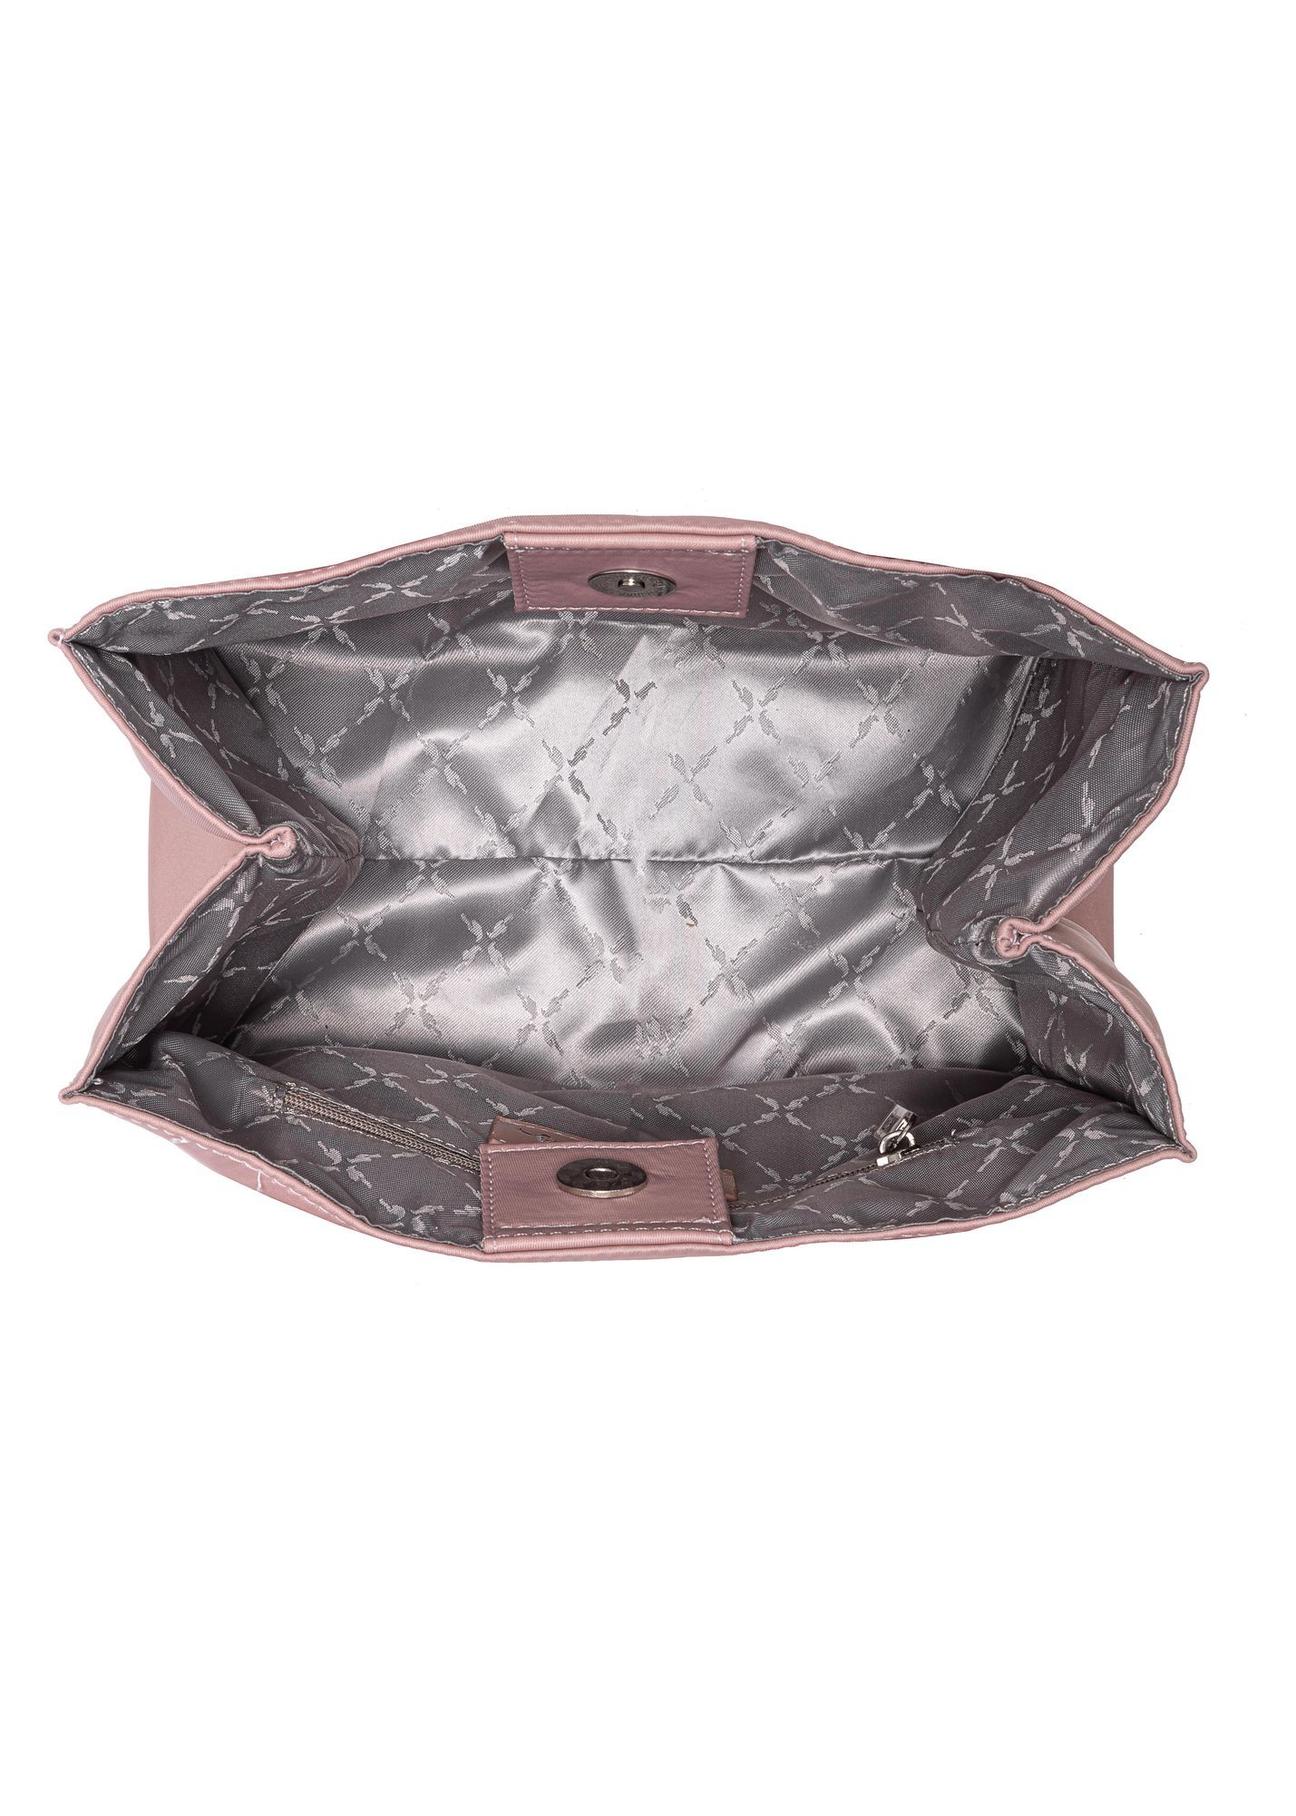 Różowa torebka damska typu tote bag TOREN-0249-31(W23)